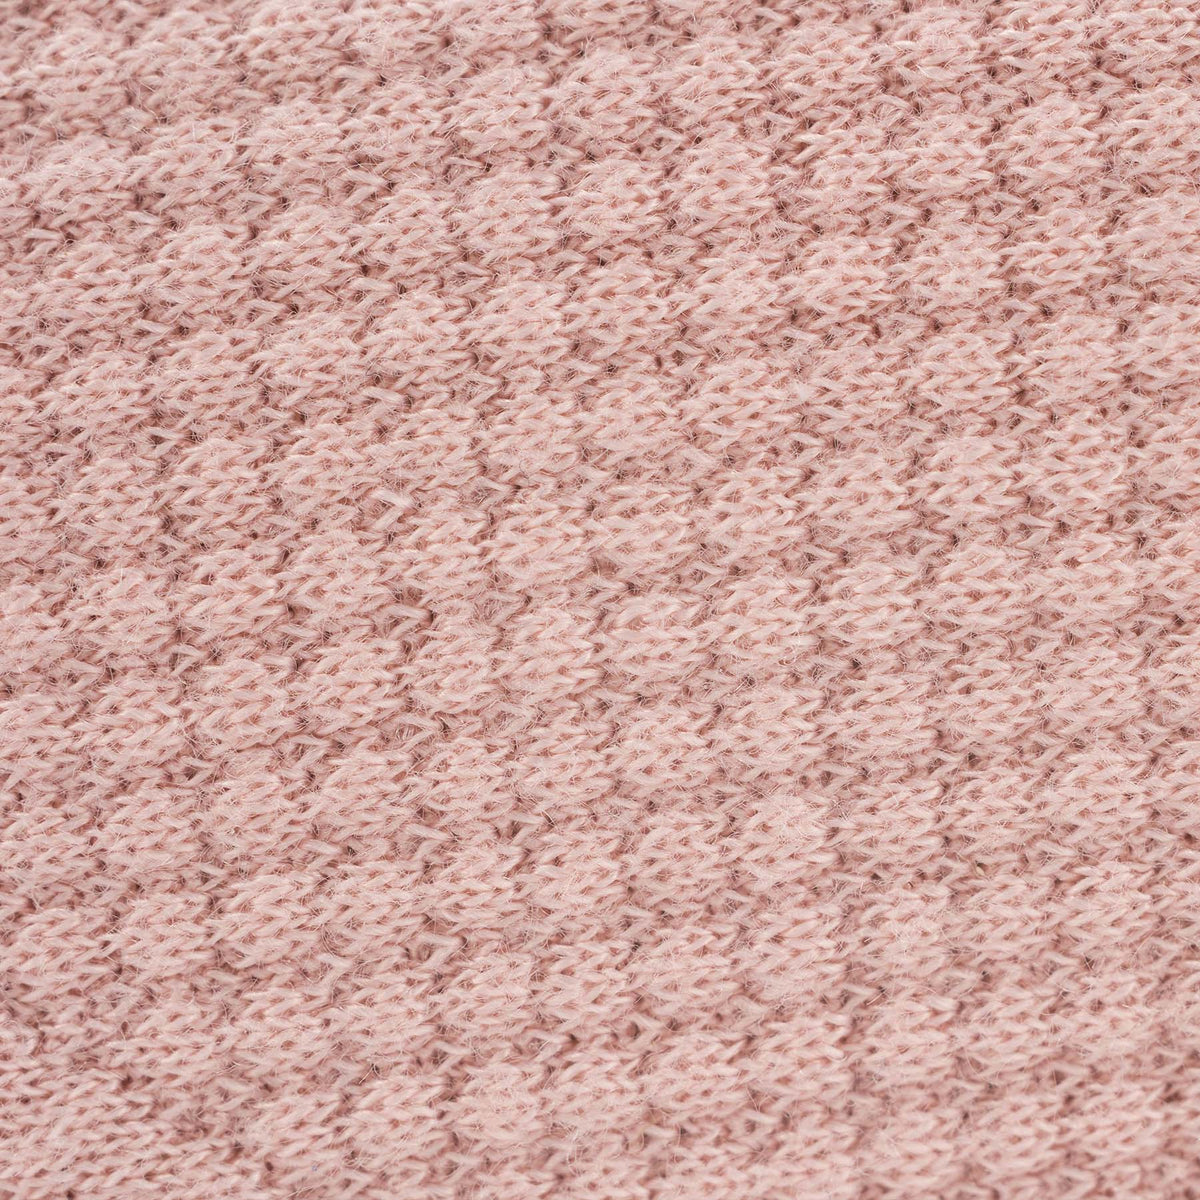 Rose Knit Blanket